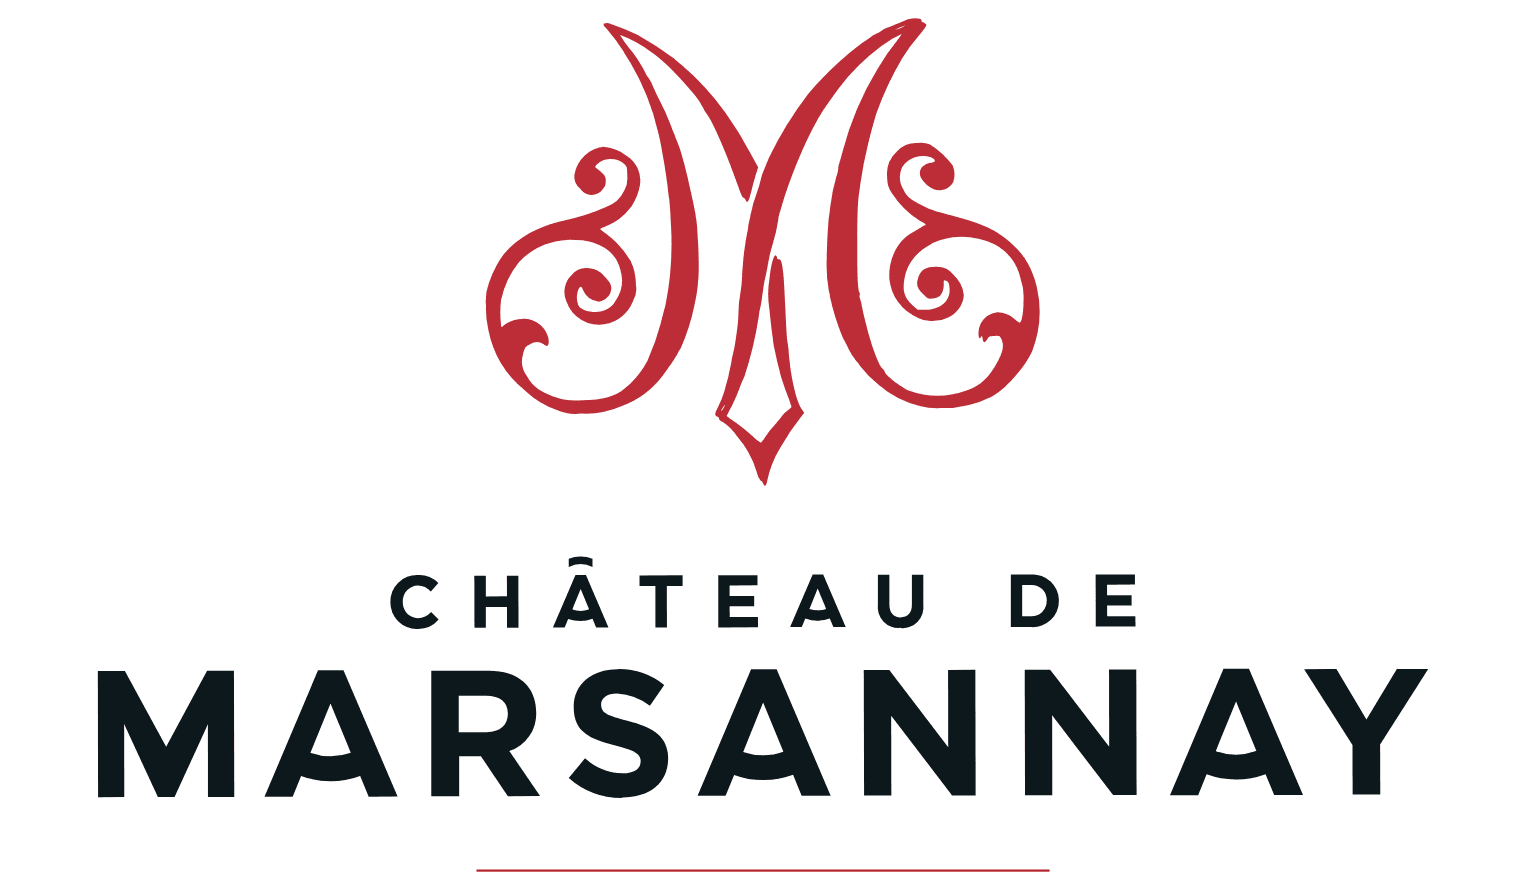 CHÂTEAU DE MARSANNAY